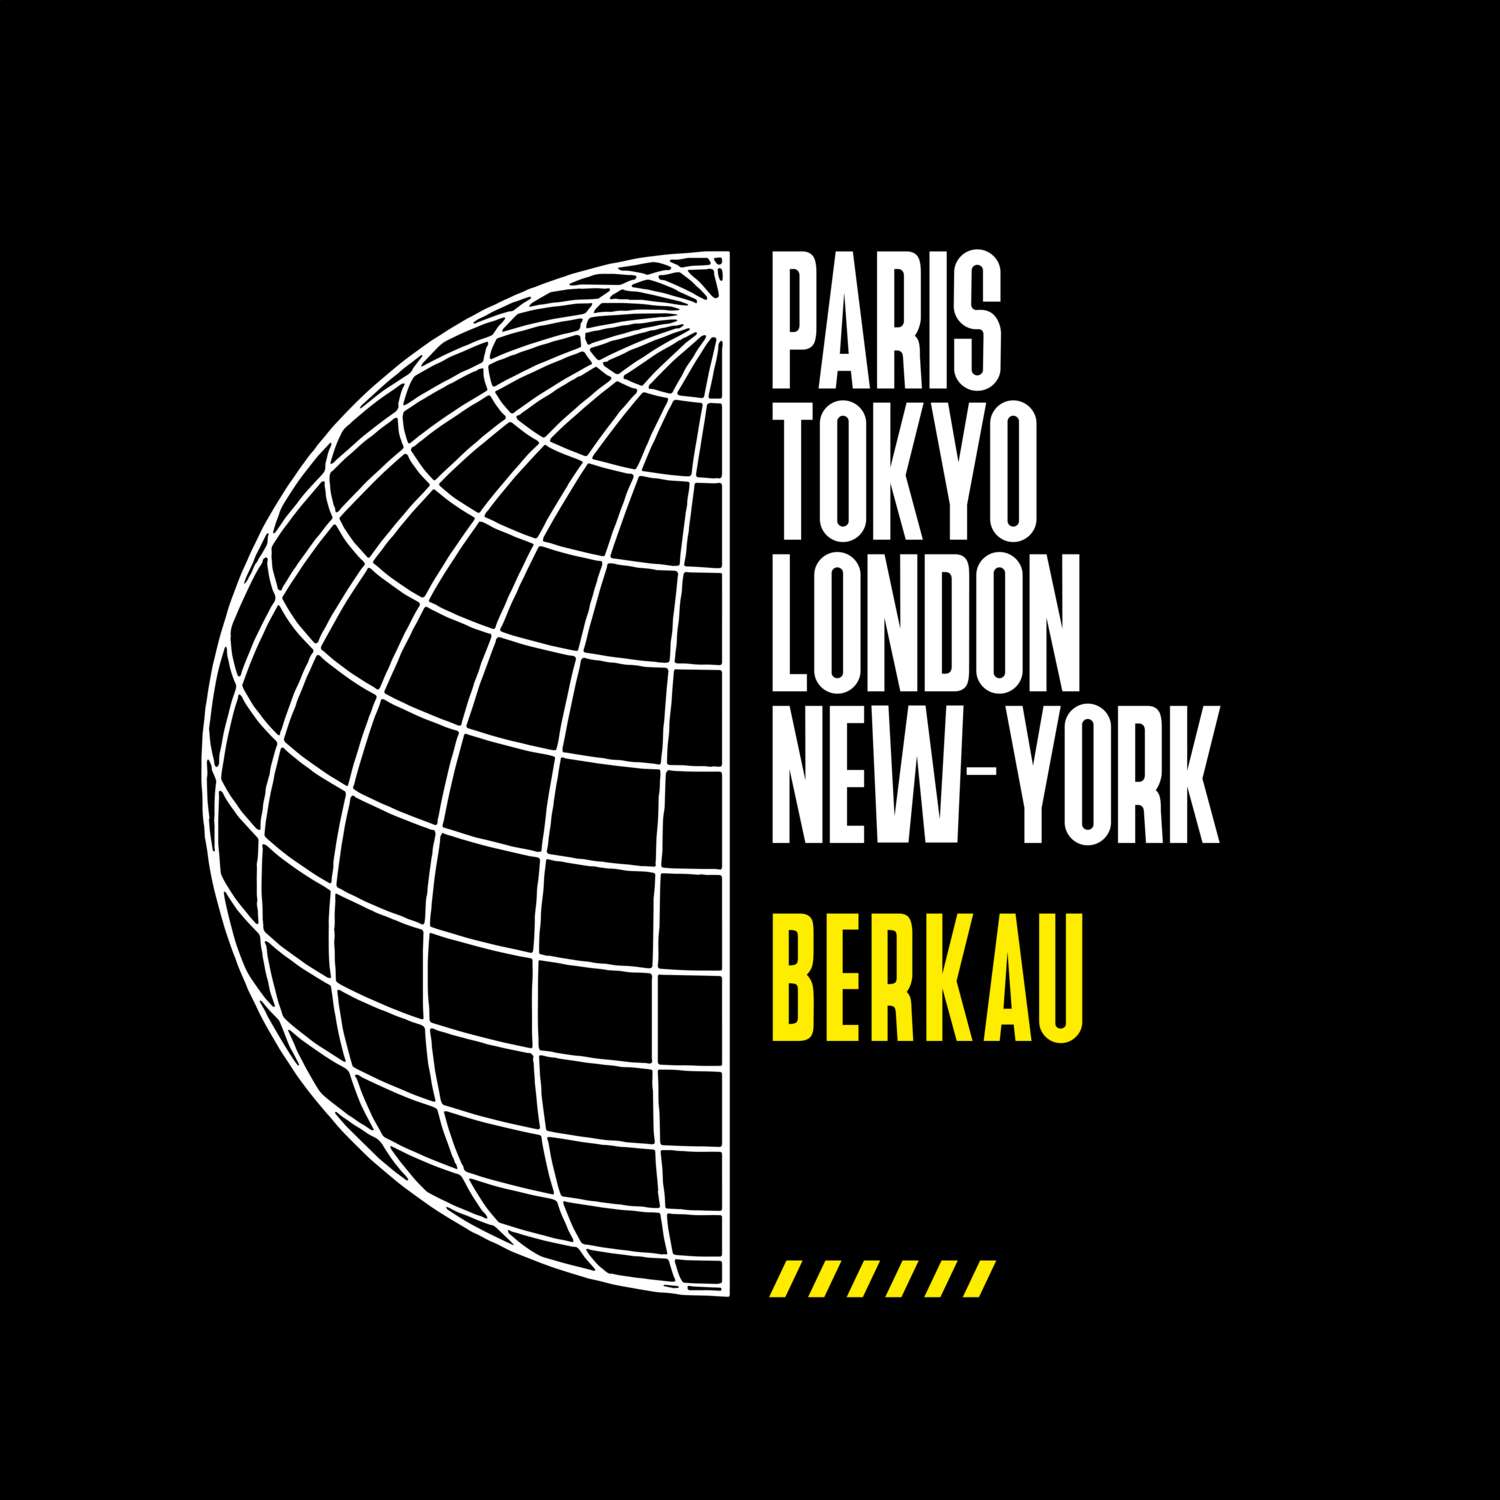 Berkau T-Shirt »Paris Tokyo London«